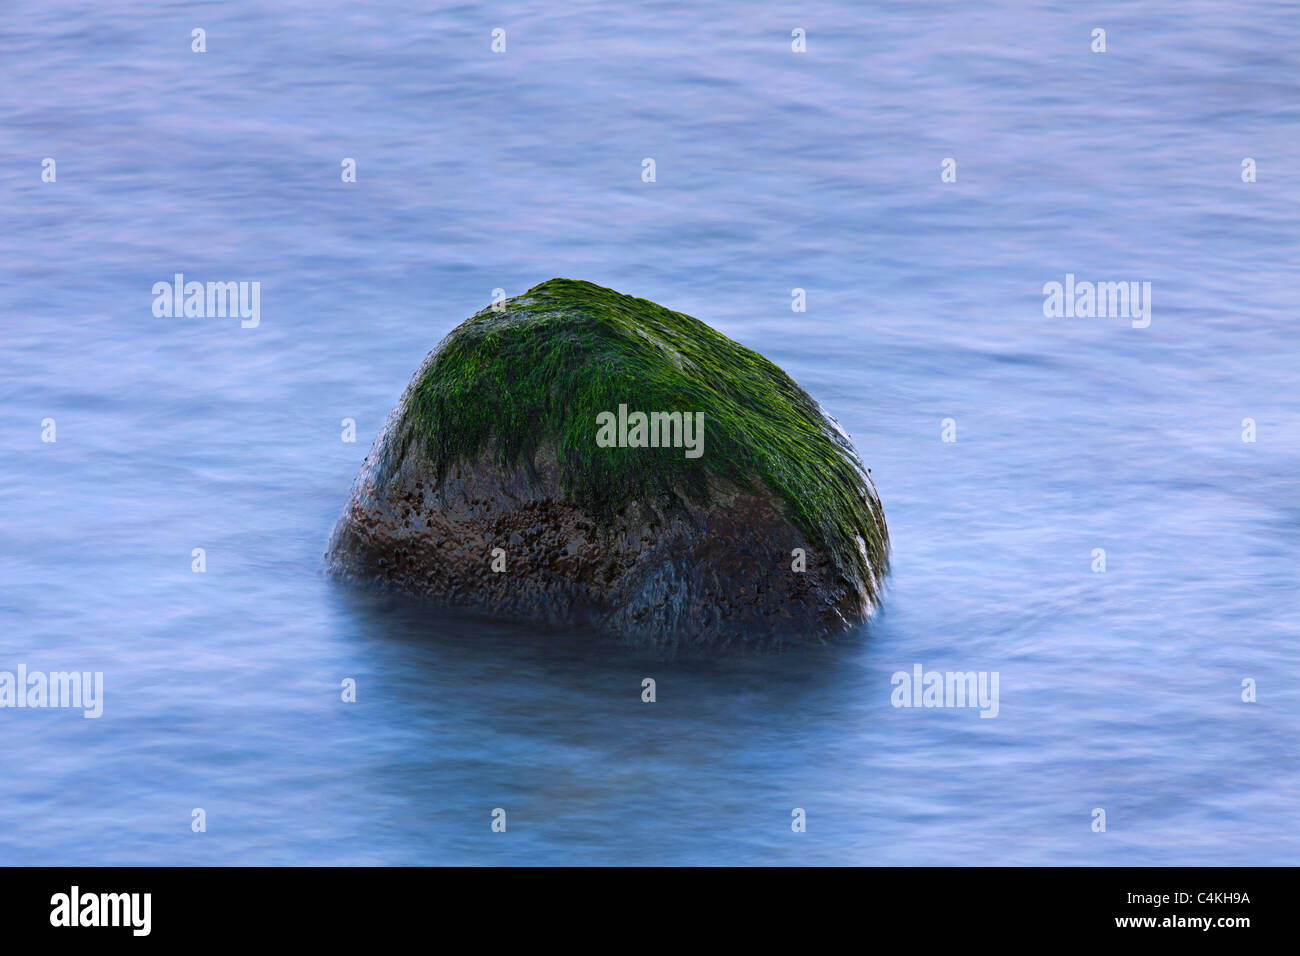 Rock-weed / Seabeard (Cladophora rupestris) growing on rock in tidal waters, Germany Stock Photo